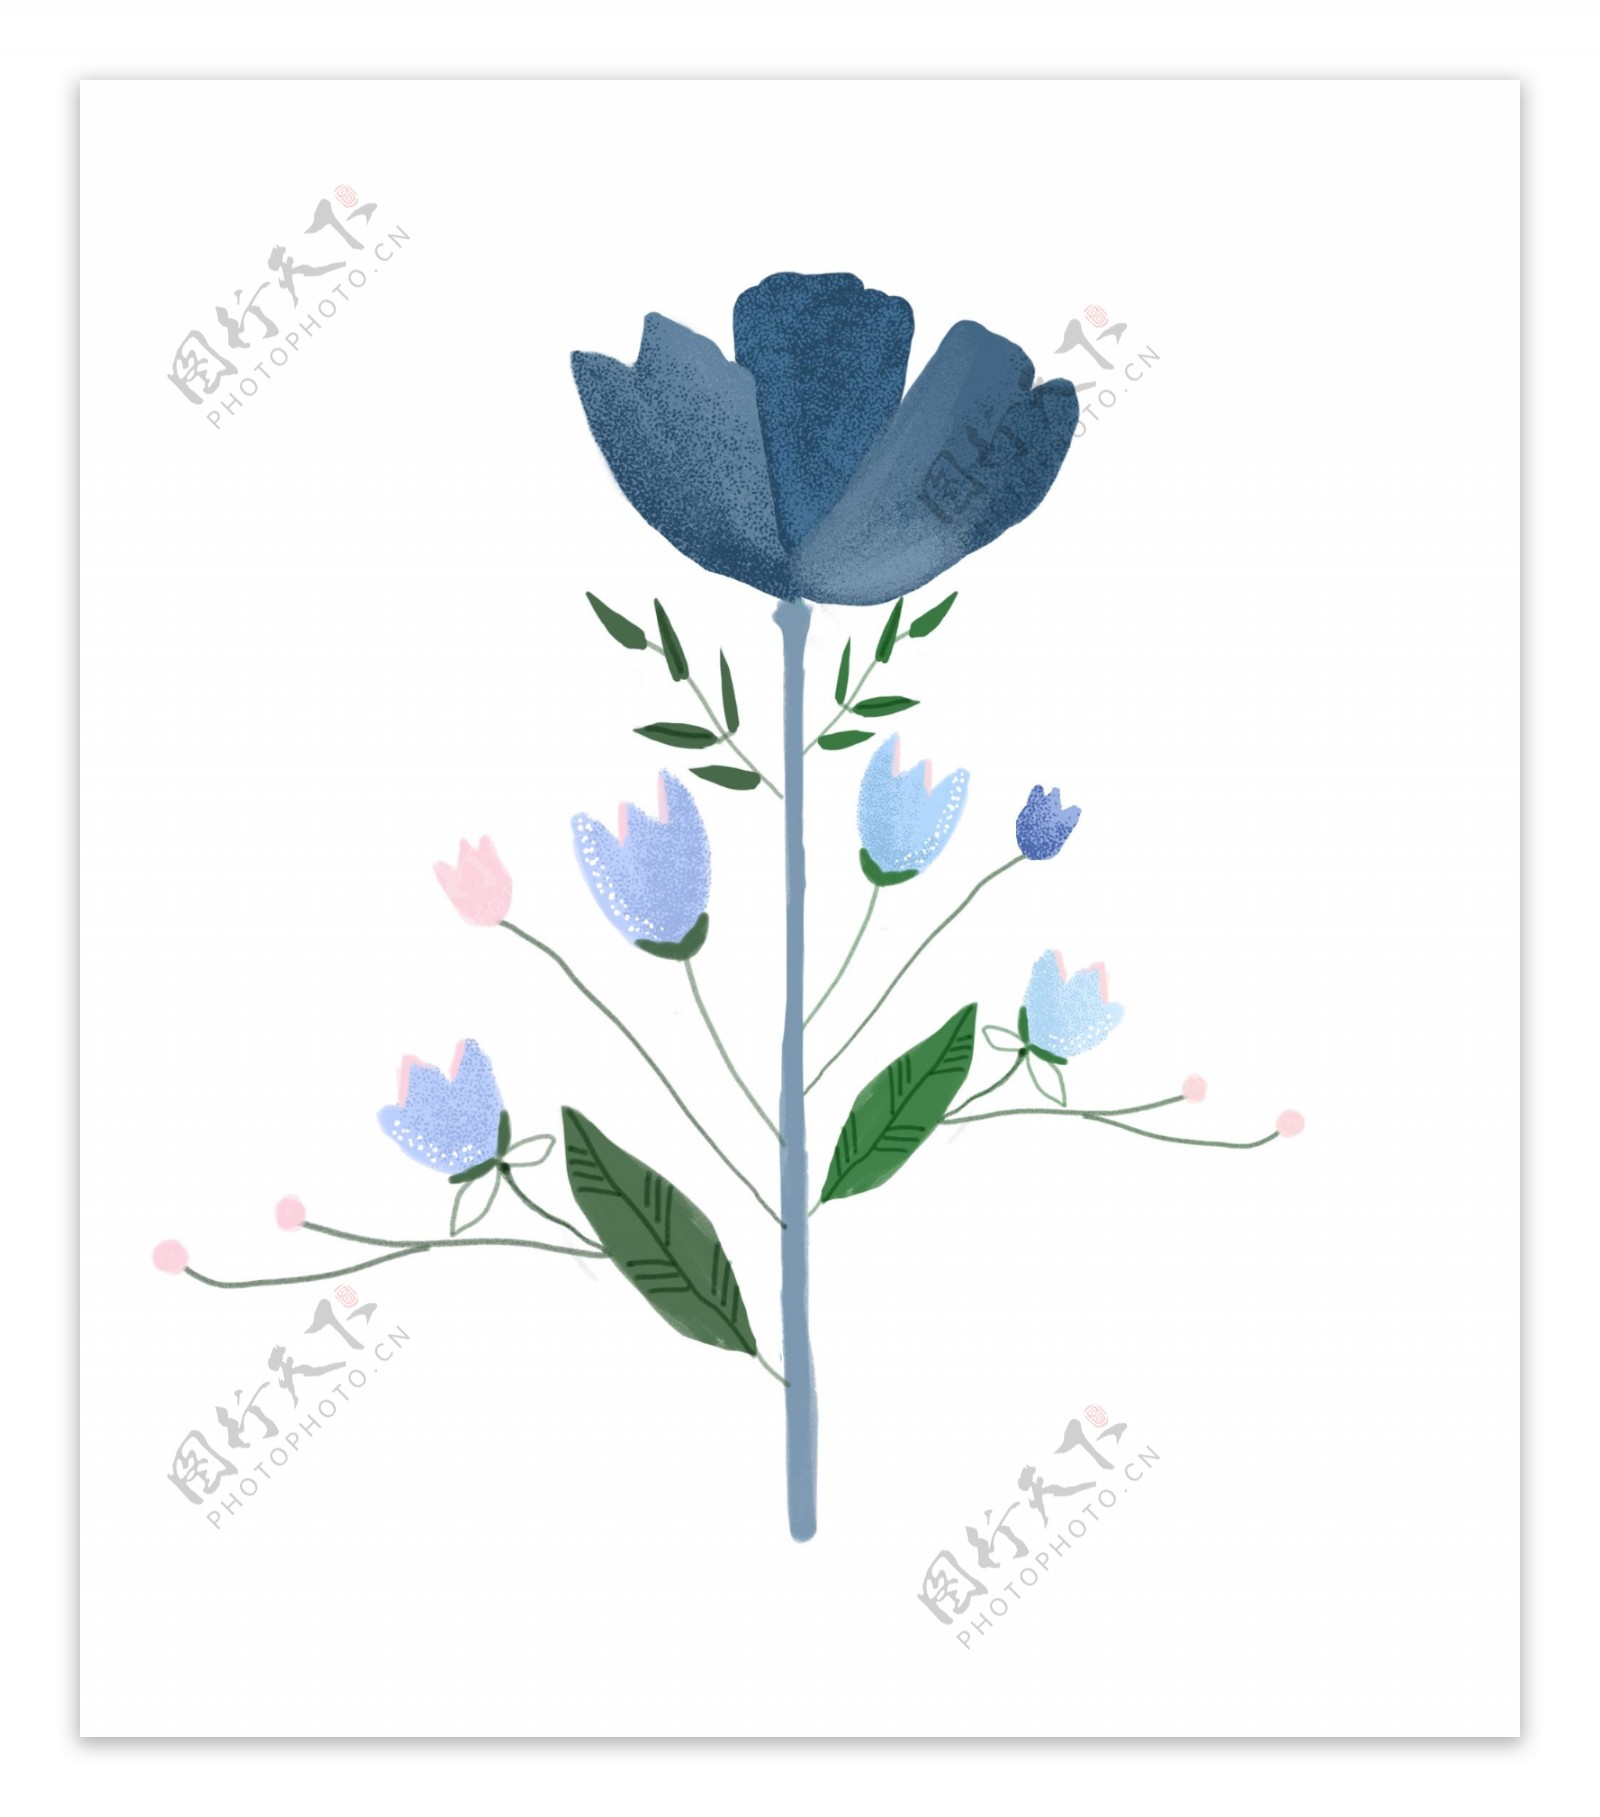 蓝色的花朵装饰插画